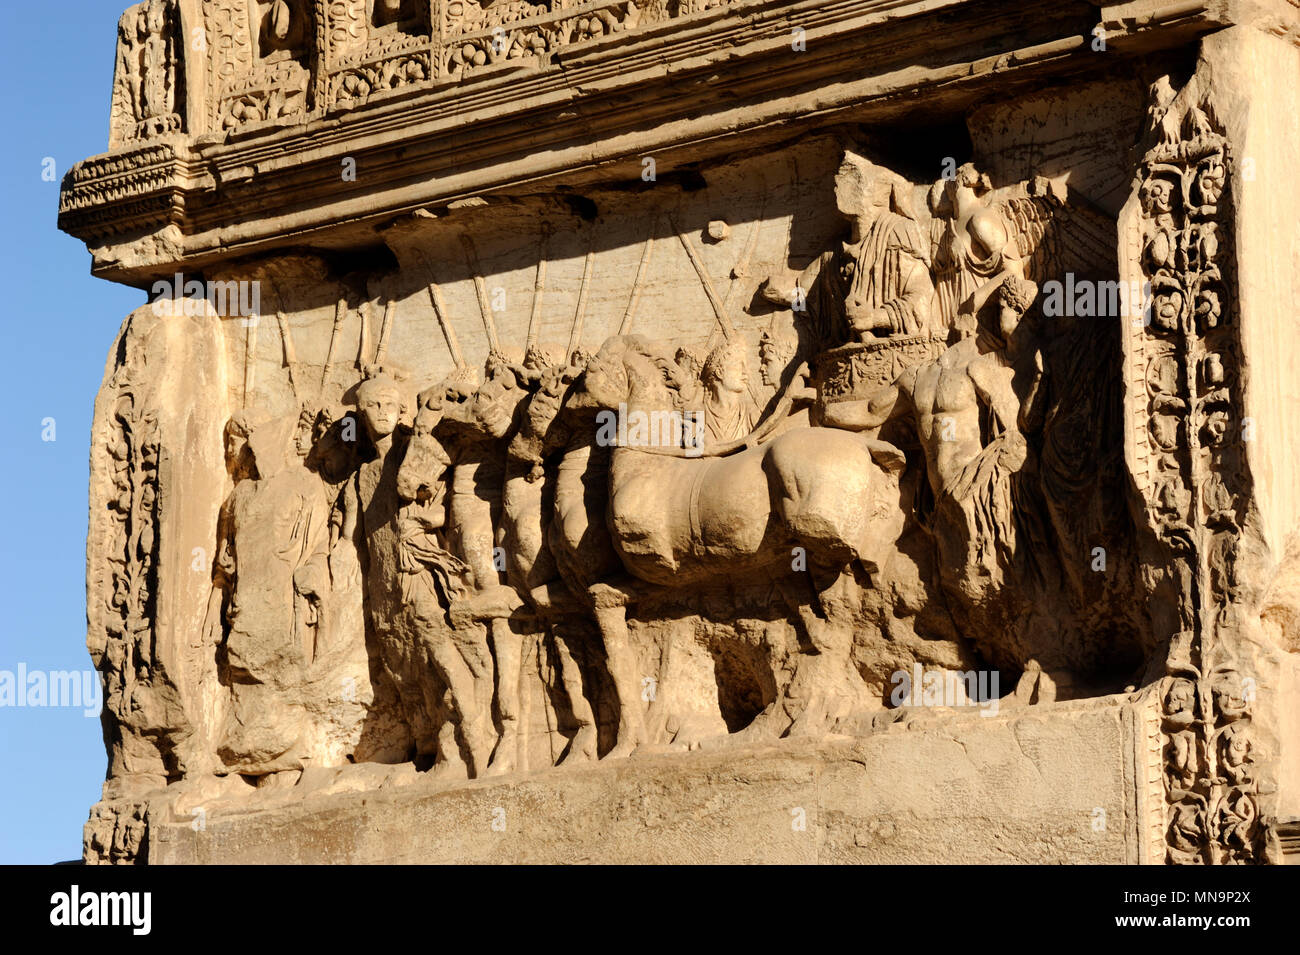 Italie, Rome, Forum romain, arc de Titus, panneau nord bas relief, Titus triomphateur sur un quadriga ou char à quatre chevaux, assisté par divers genii Banque D'Images